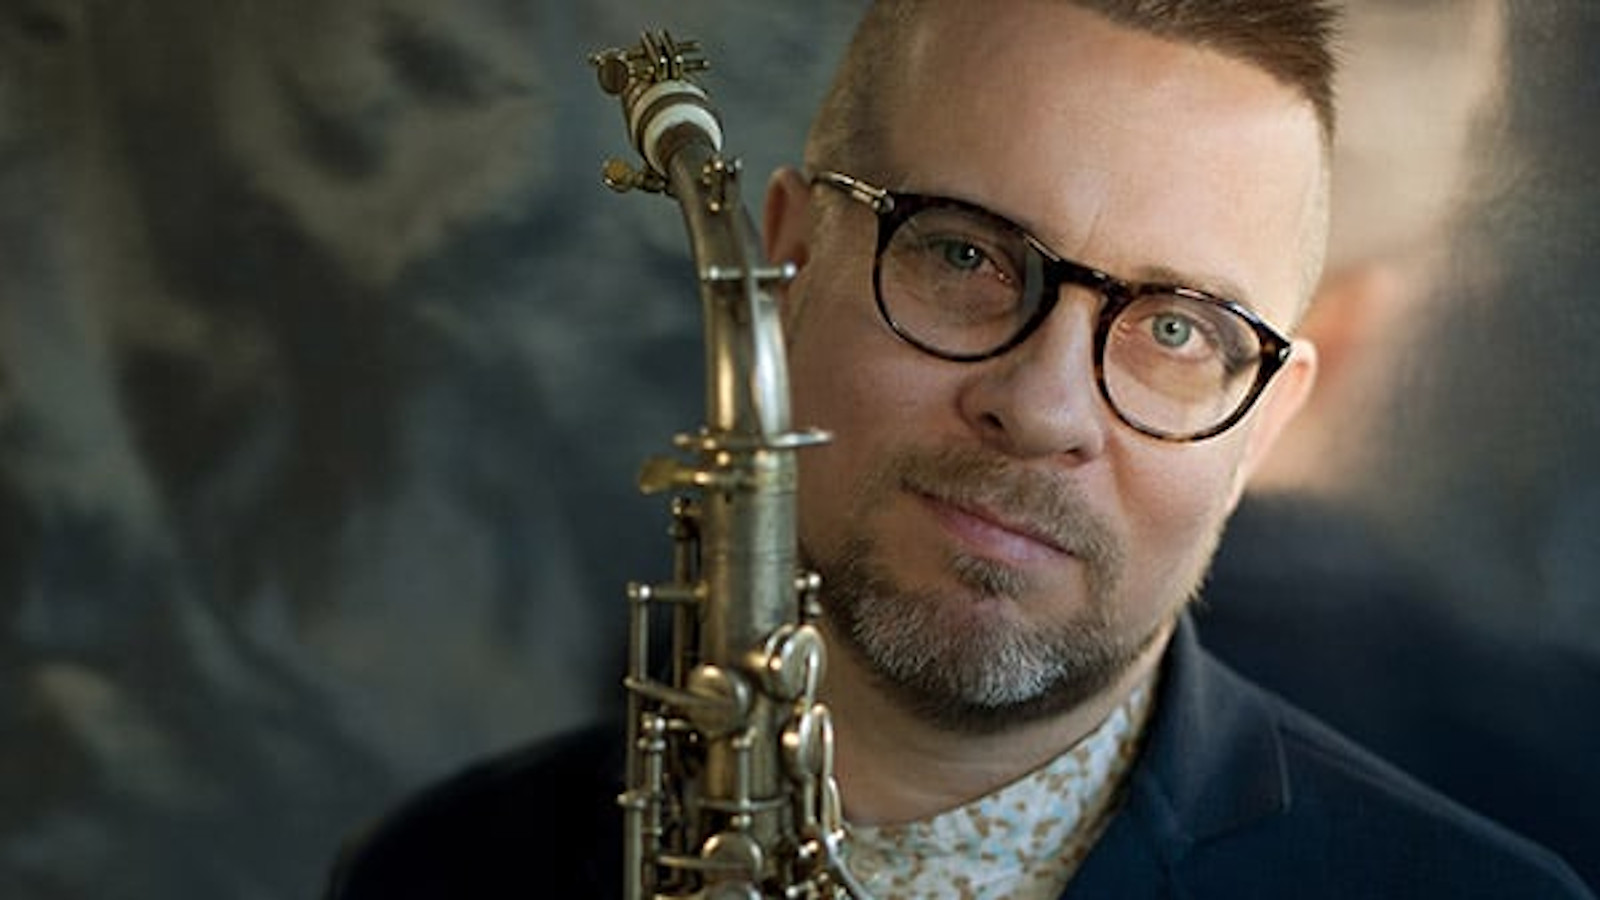 Kuvassa on Jukka Perkon kasvokuva ja hänellä on edessään saksofoni.